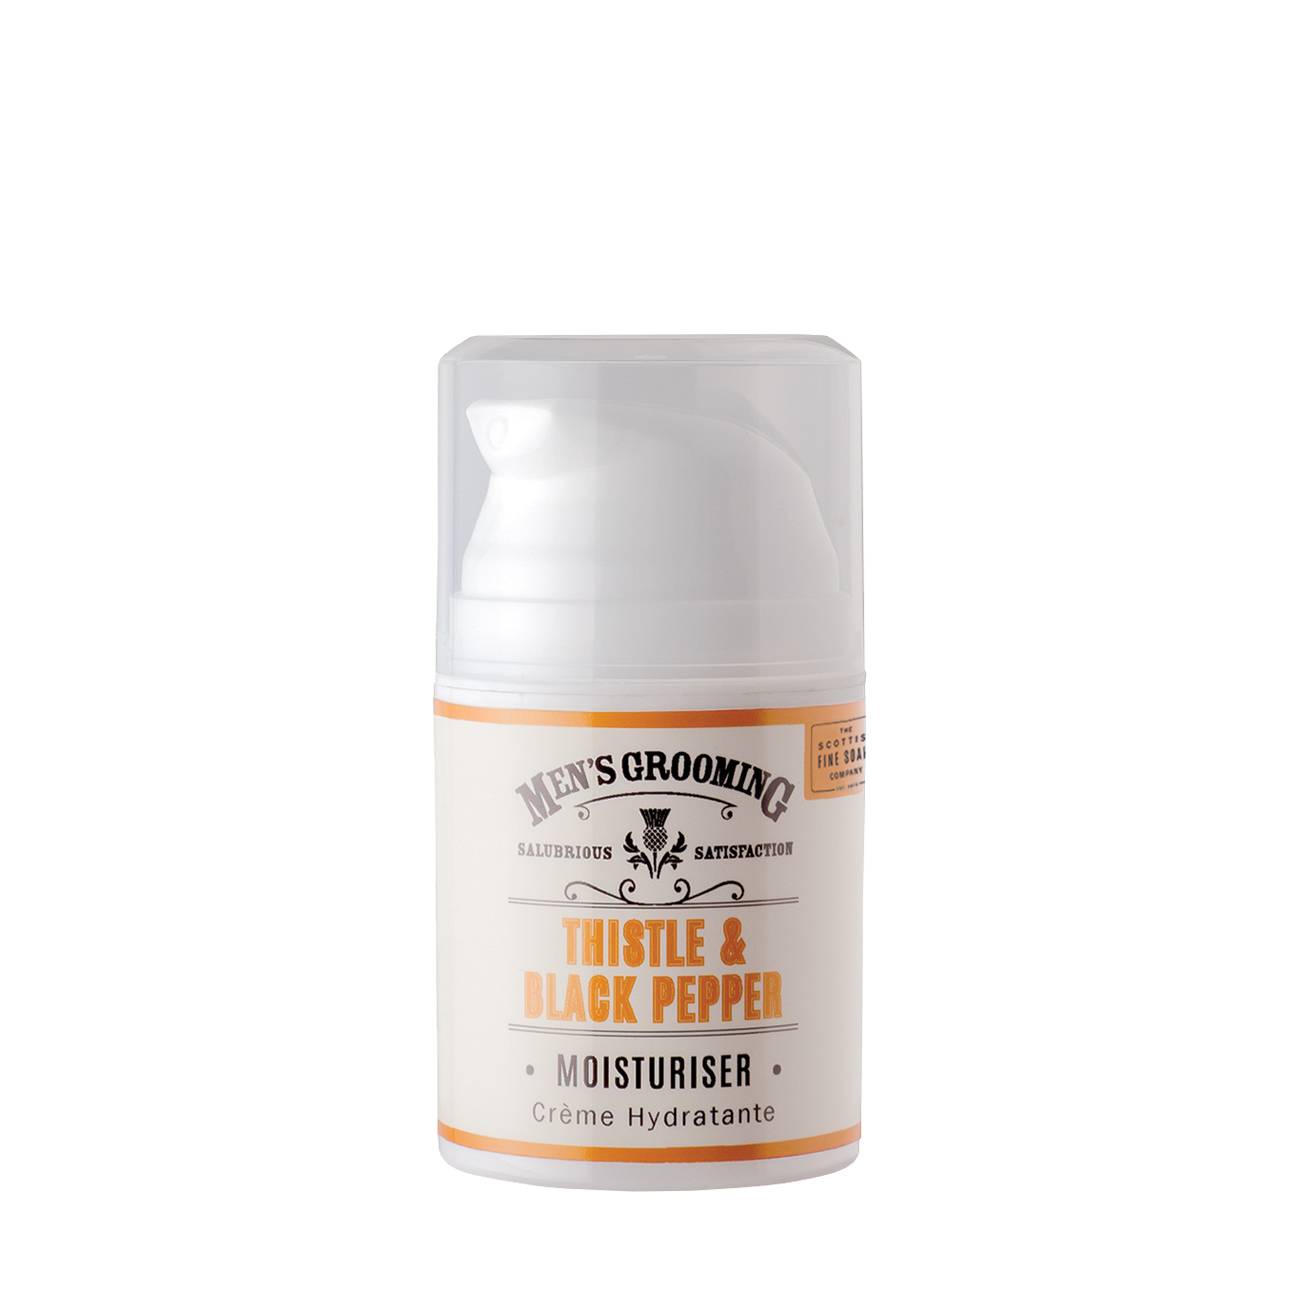 Thistle & Black Pepper Moisturiser 50 ml